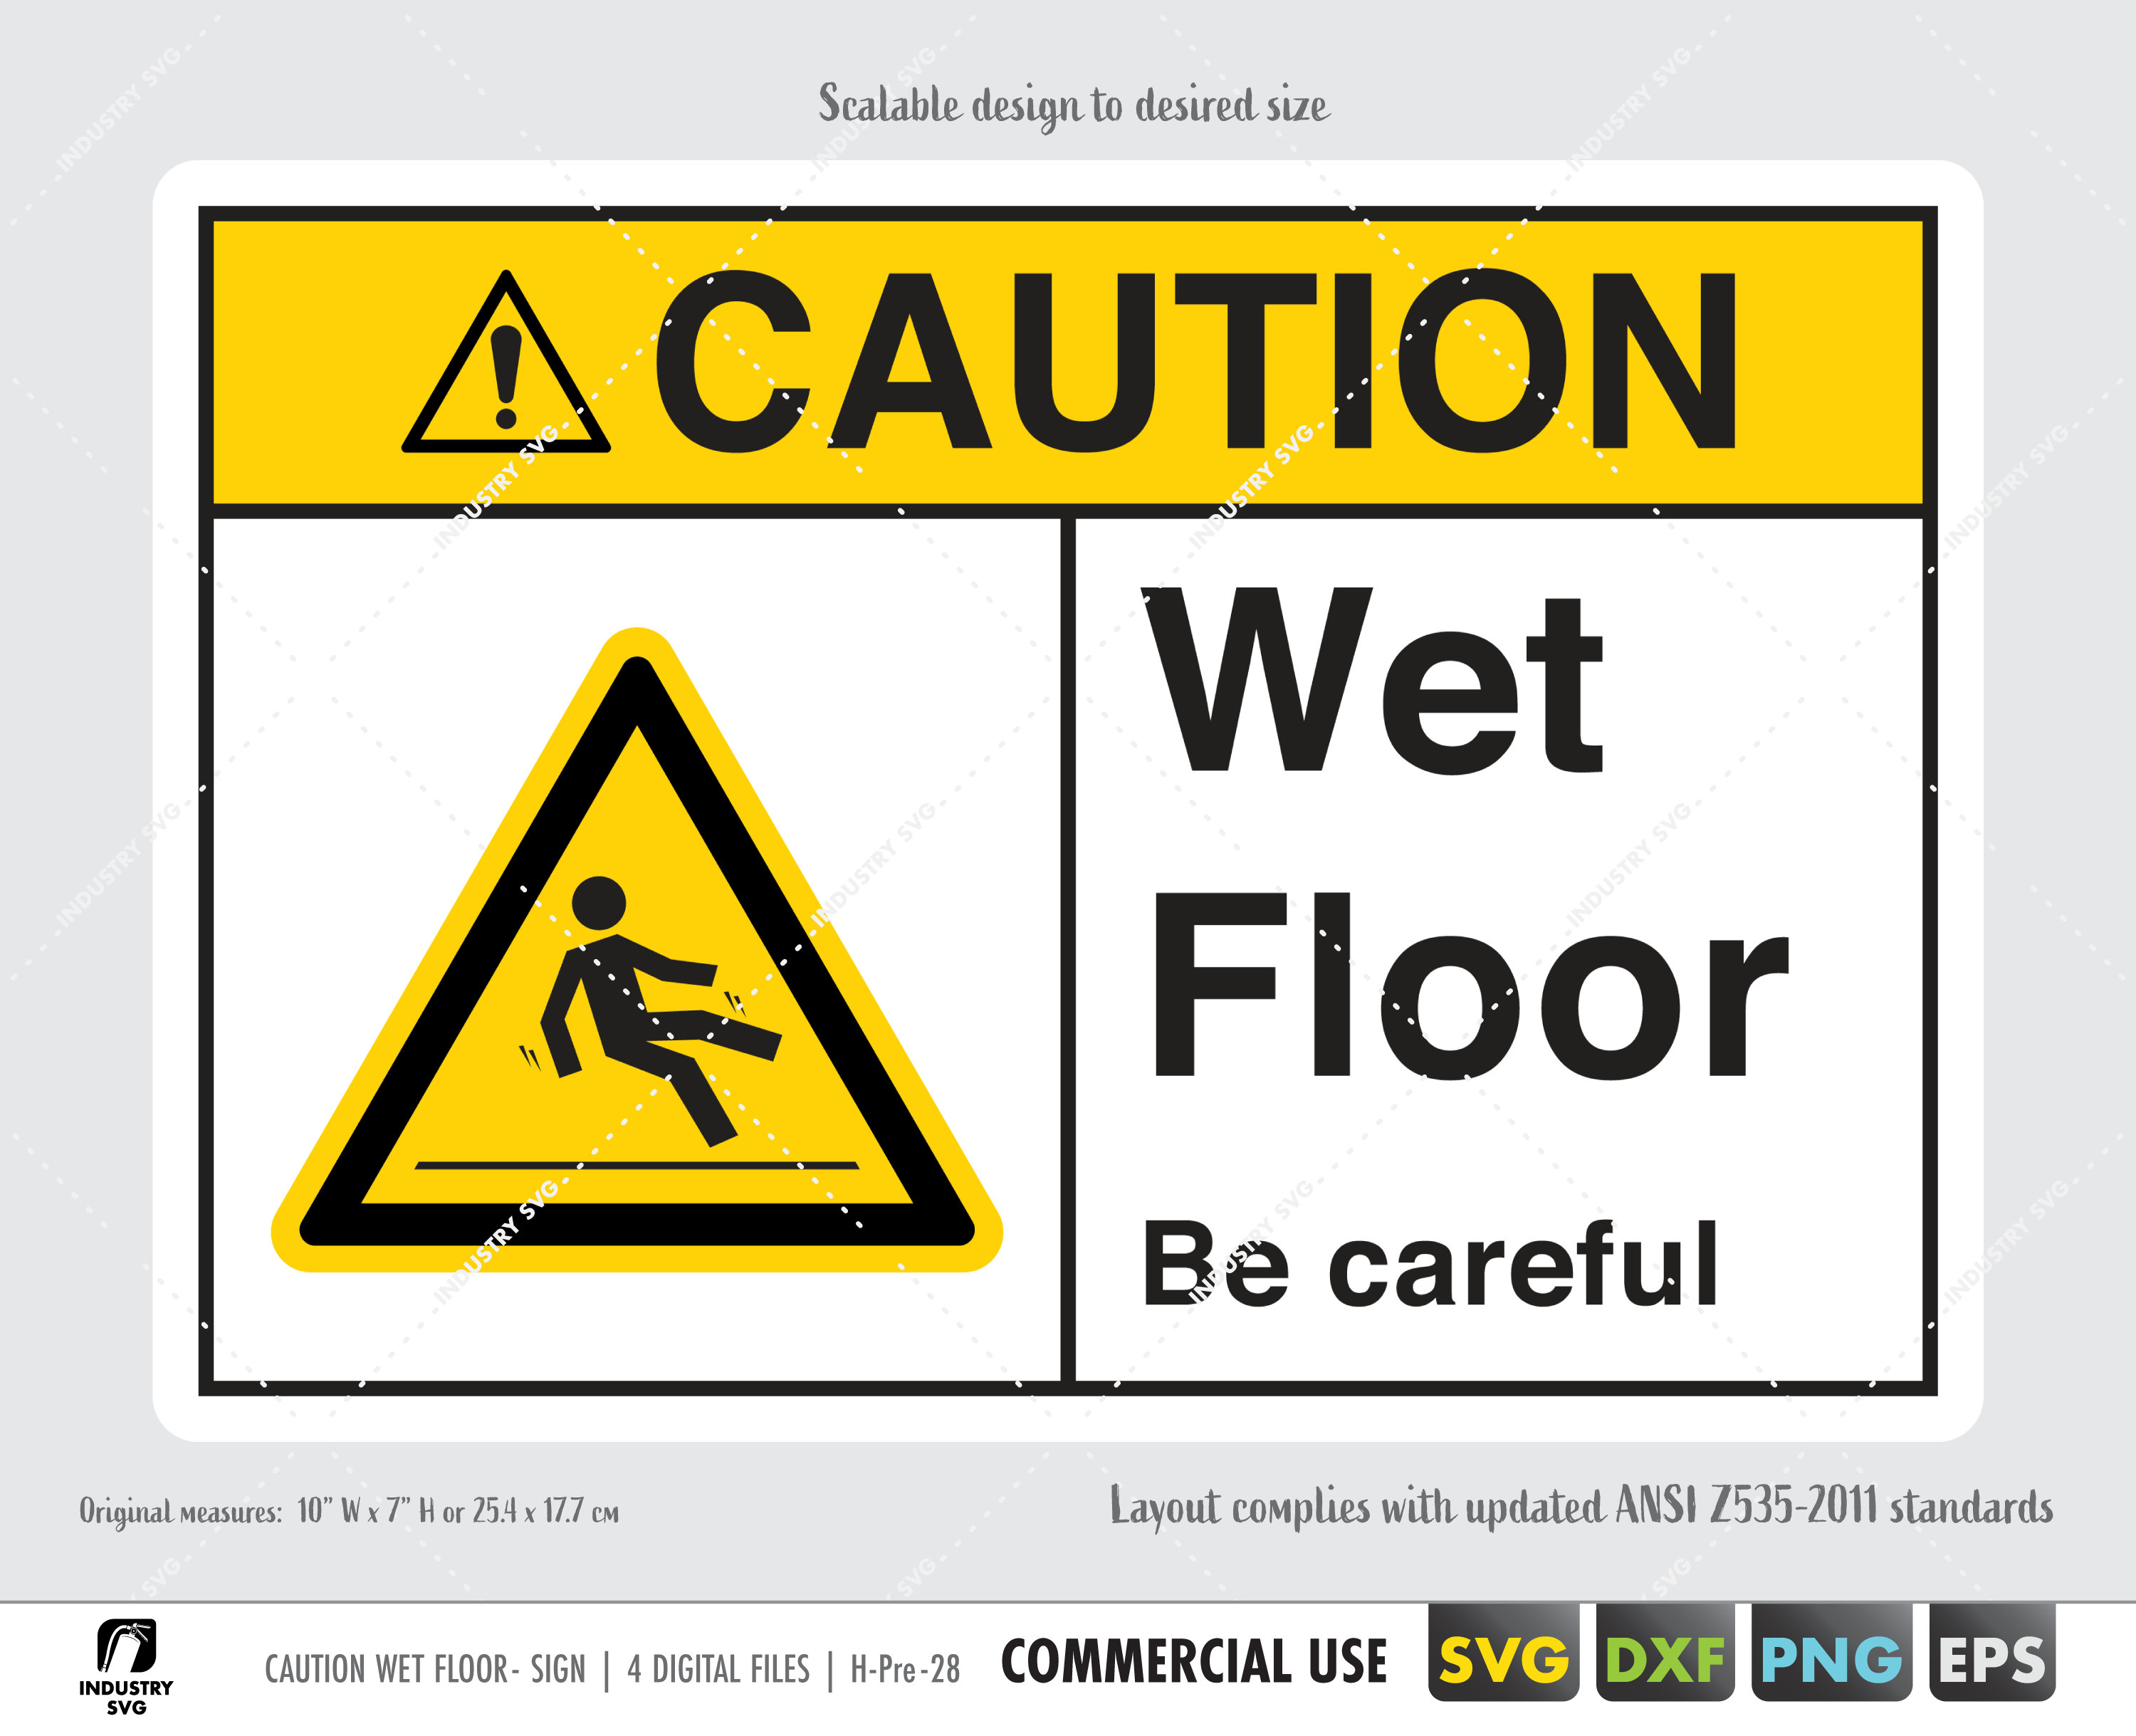 wet floor sign clipart png